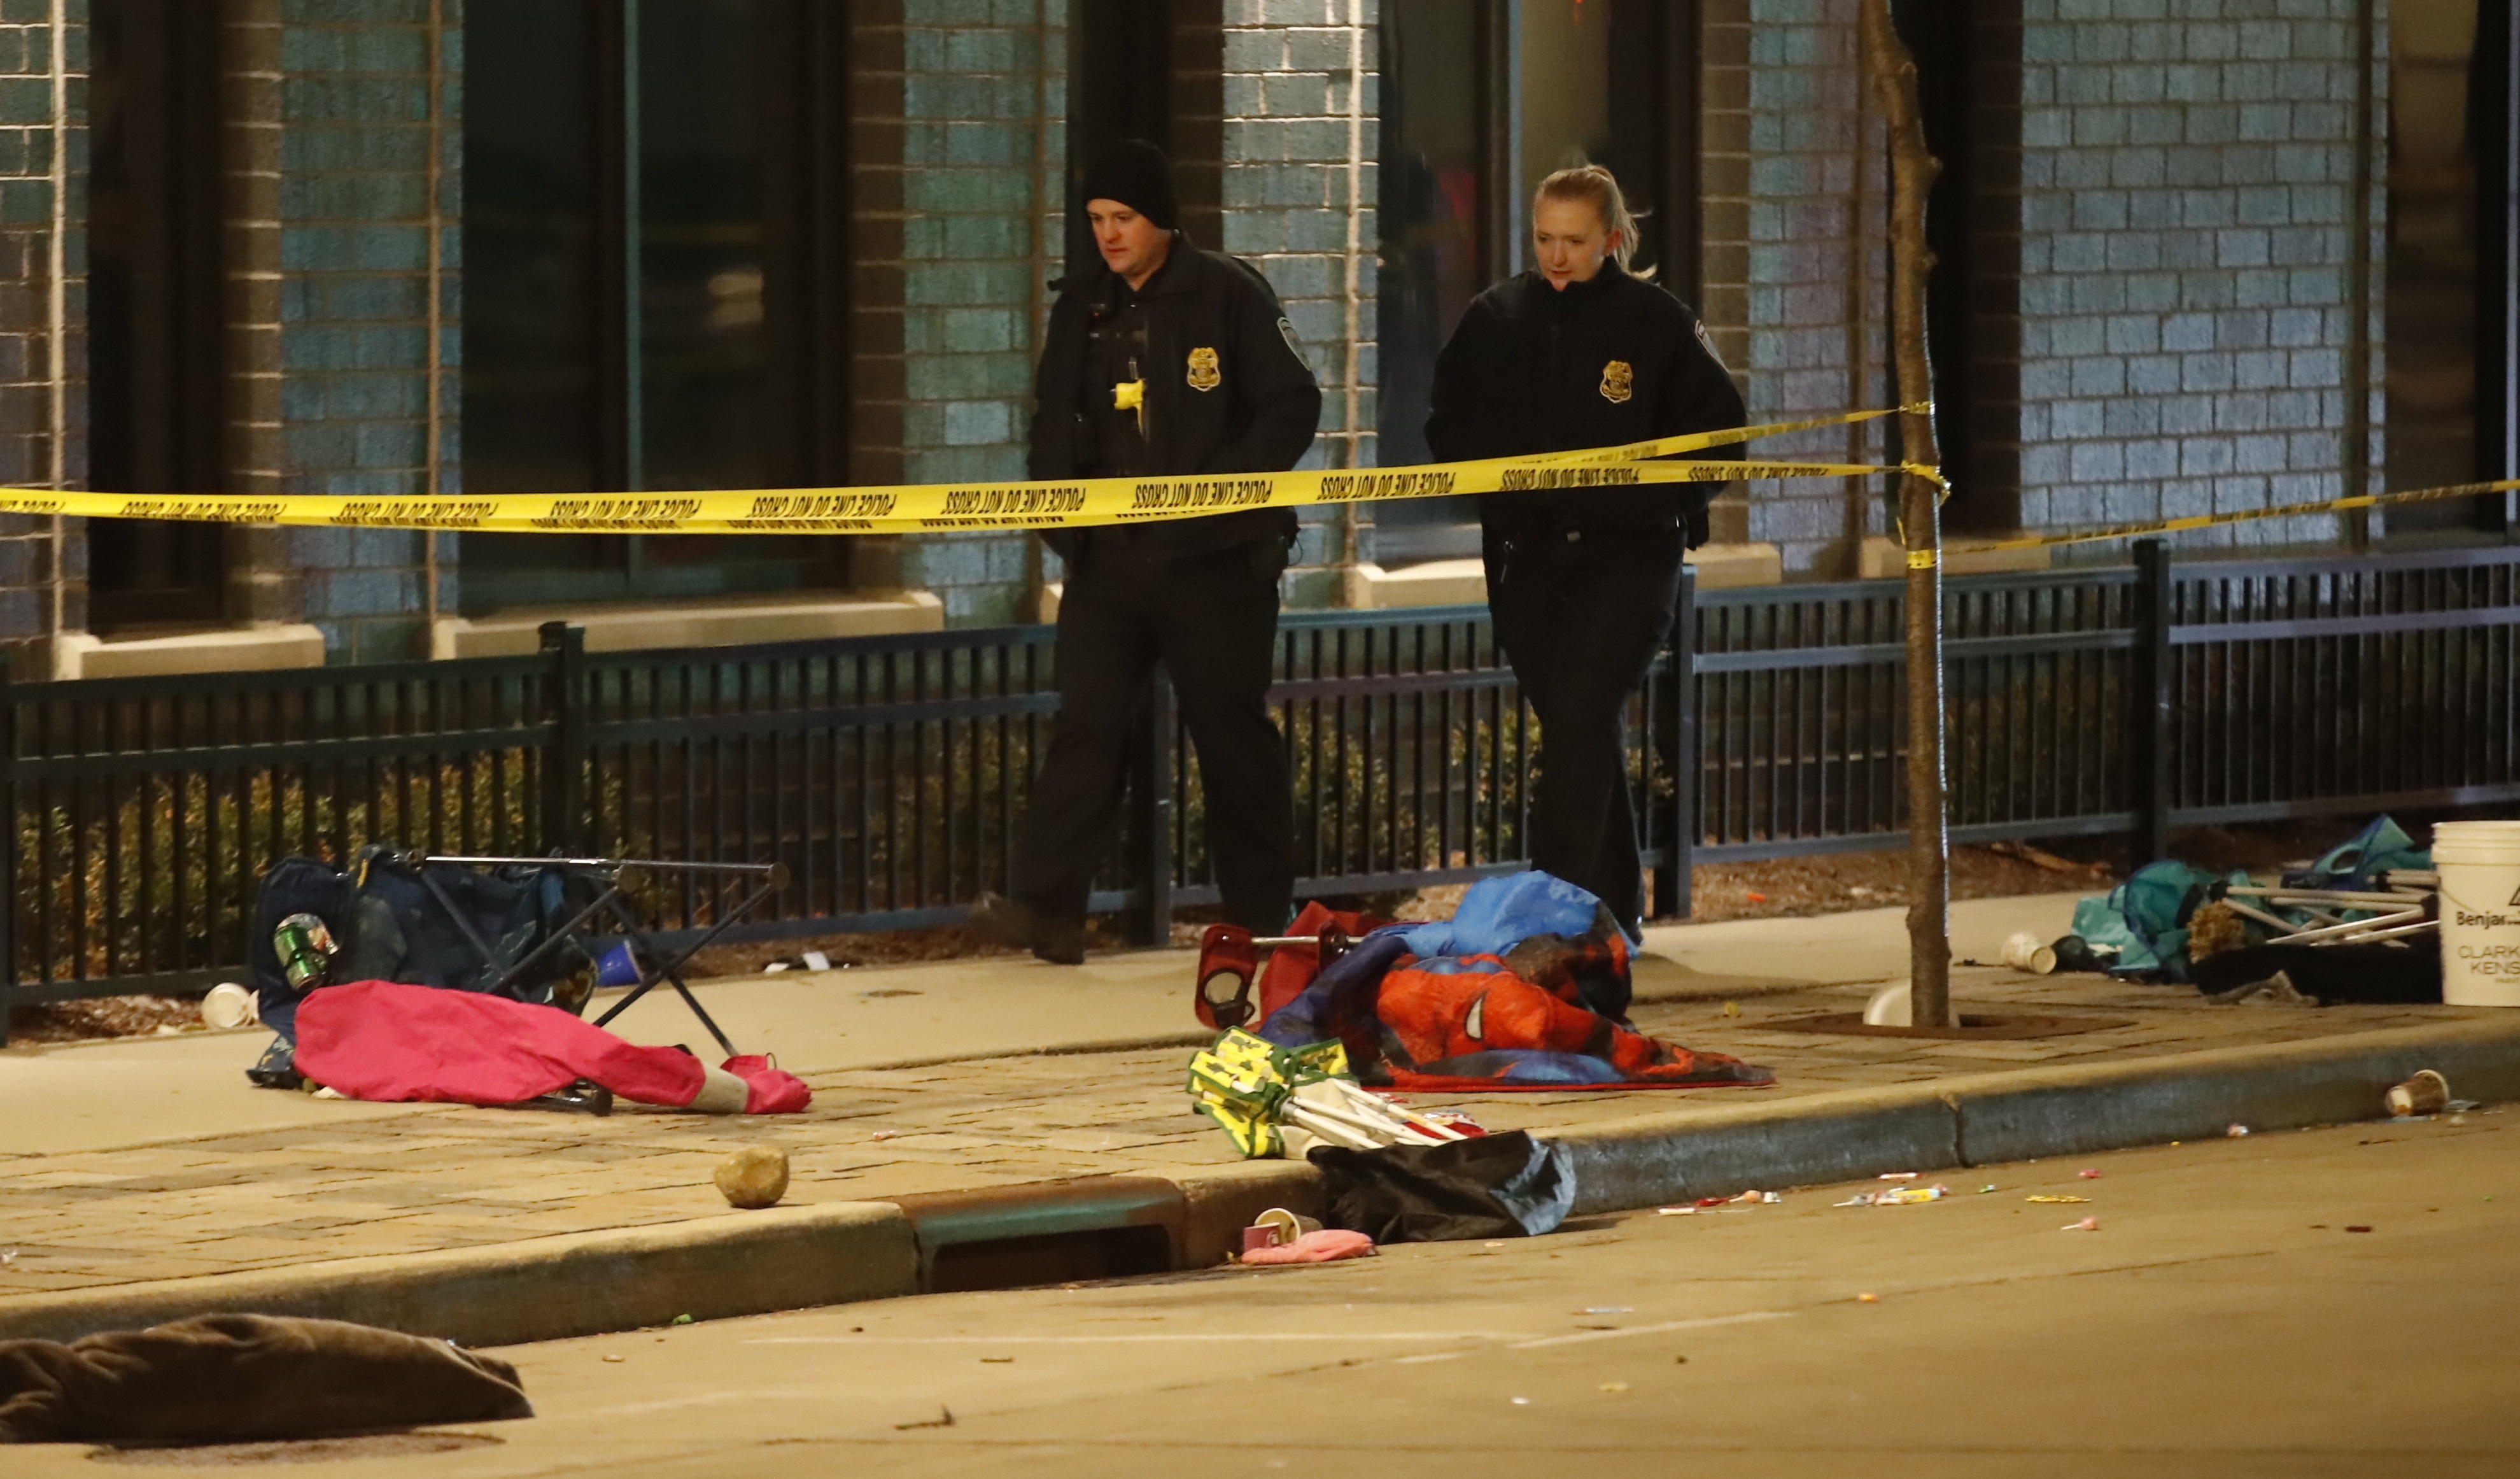 Policía confirma que atropello en EE.UU. no fue un atentado terrorista